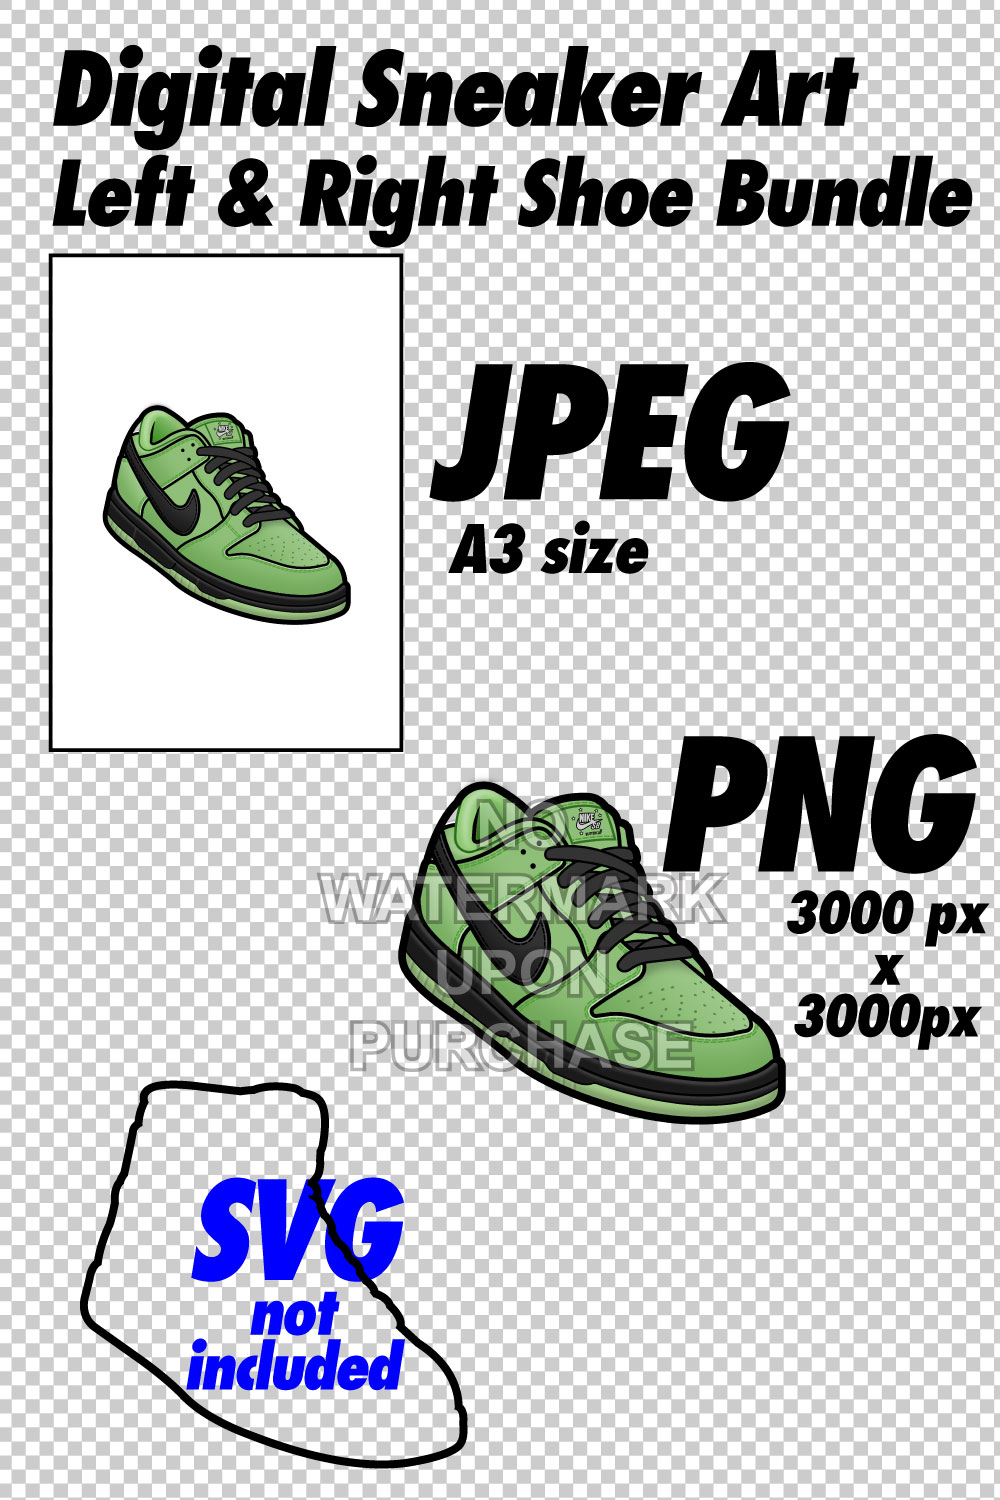 Dunk Low Powerpuff Girls Buttercup JPEG PNG Sneaker Art Right & Left Shoe Bundle pinterest preview image.